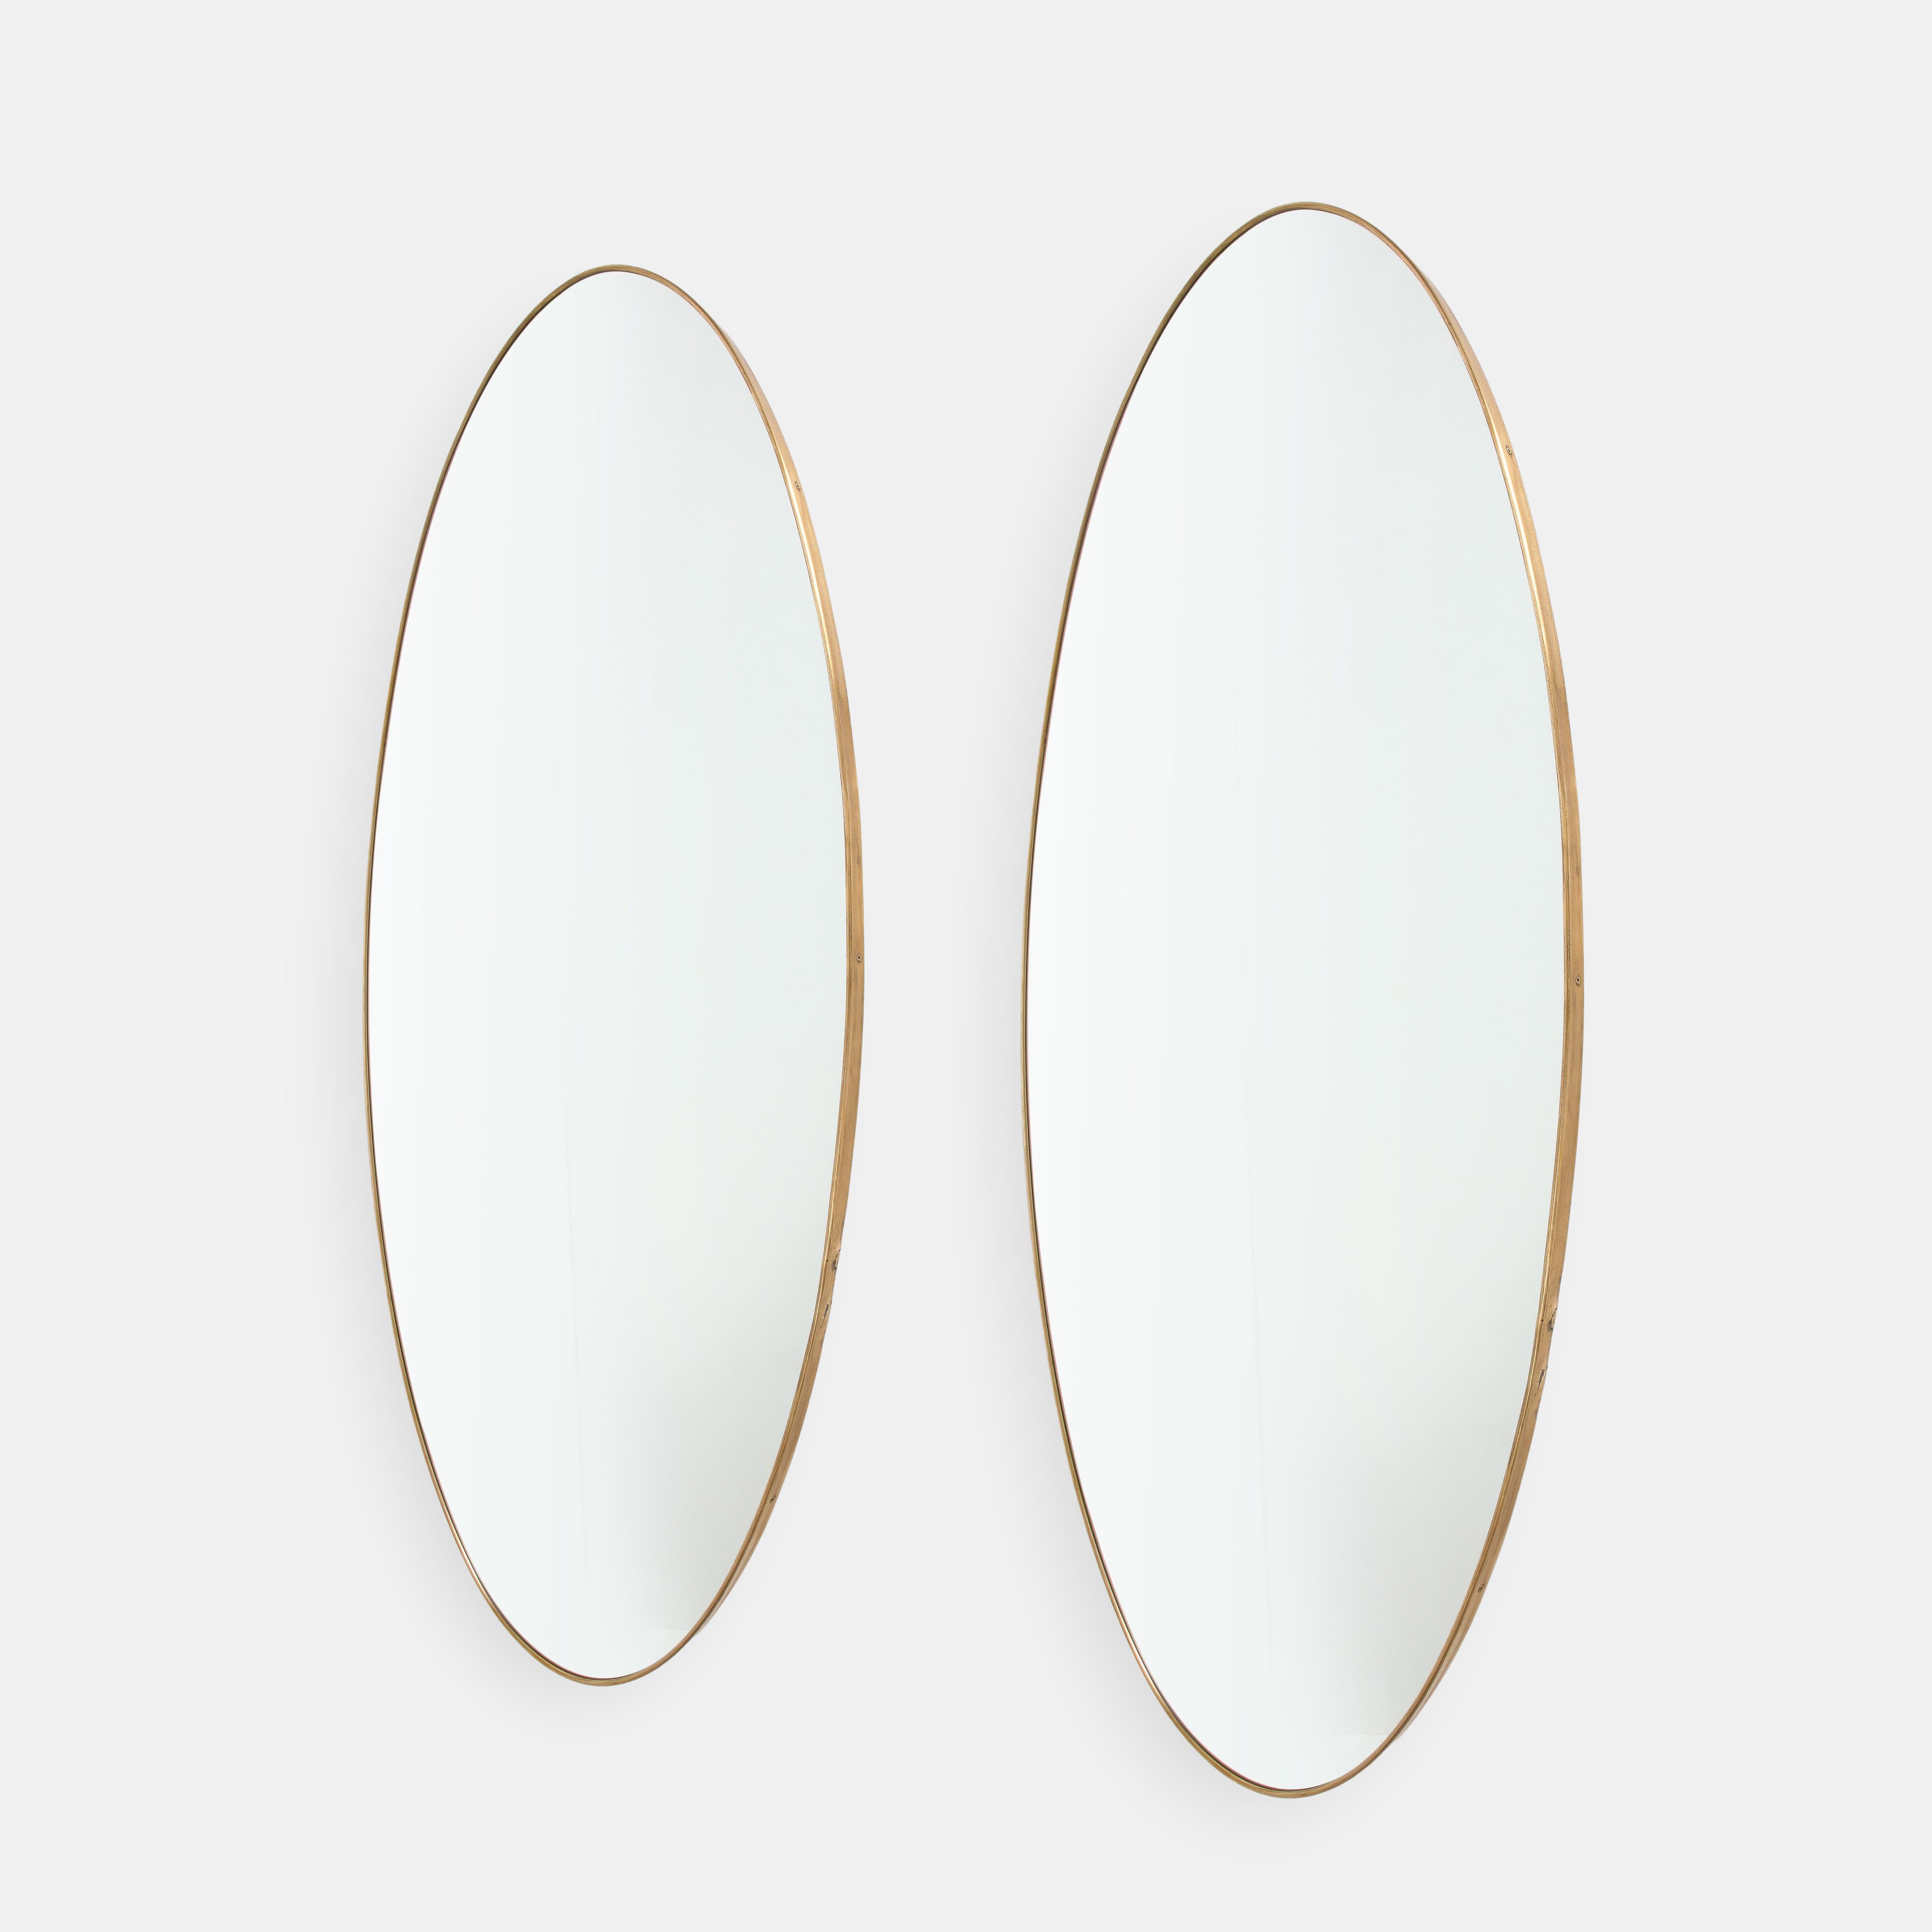 1950er Jahre Italienische seltene Paar großformatige ovale Wandspiegel. Diese eleganten Spiegel sind groß und auffallend in der Größe und haben eine schöne reiche patiniert geformten Messingrahmen und solide Konstruktion mit Holzrückseite. Diese